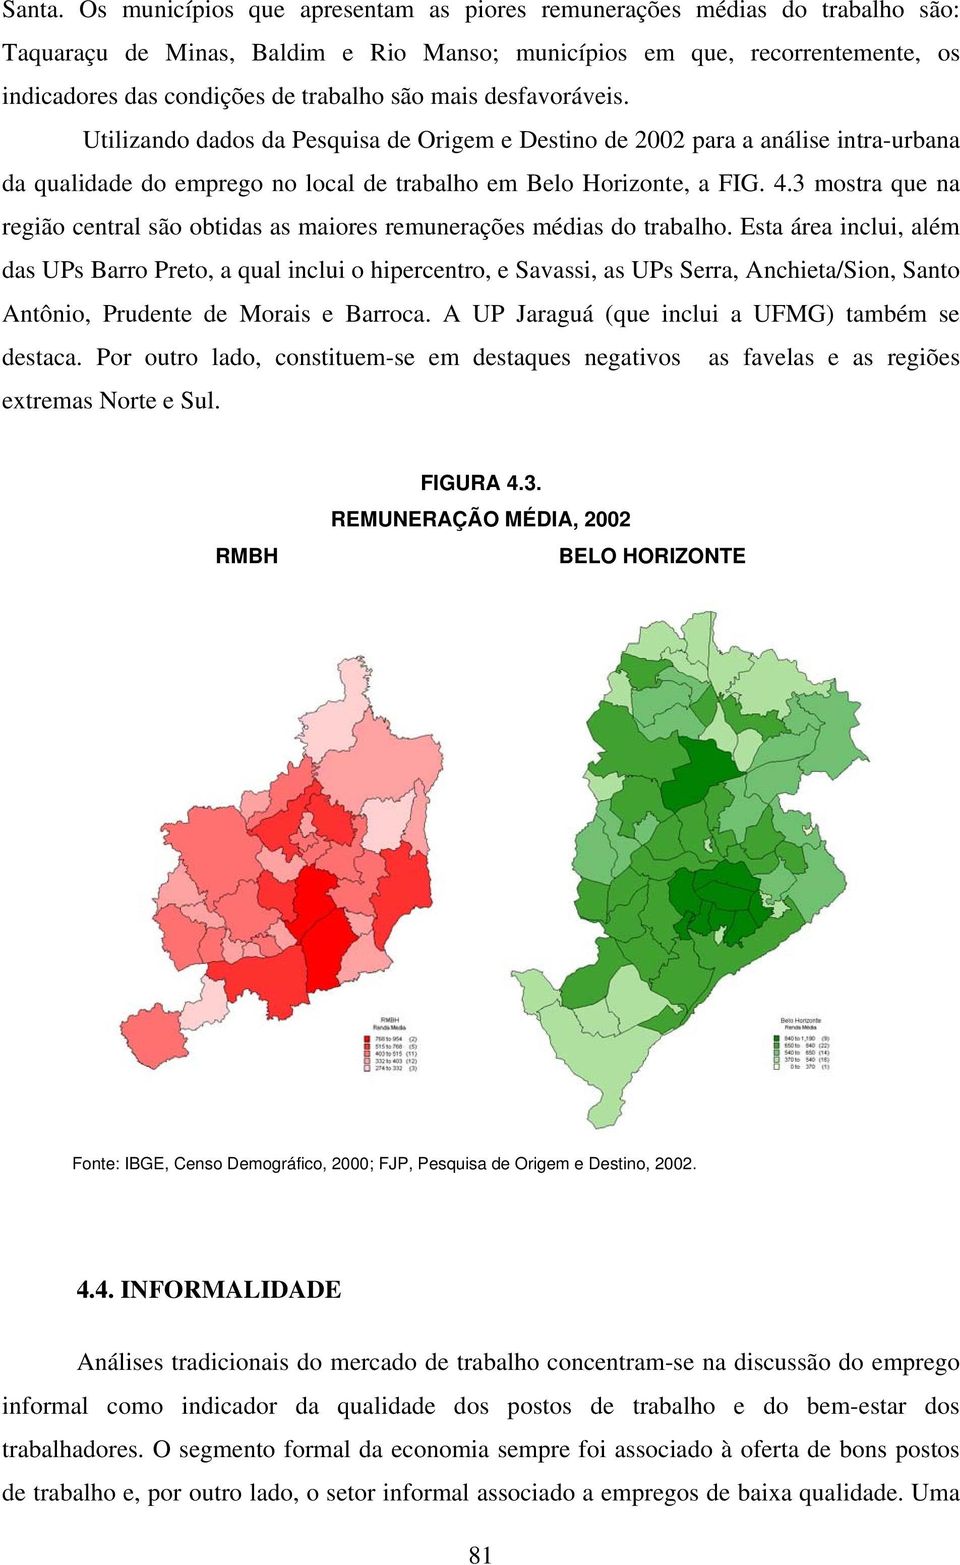 mais desfavoráveis. Utilizando dados da Pesquisa de Origem e Destino de 2002 para a análise intra-urbana da qualidade do emprego no local de trabalho em Belo Horizonte, a FIG. 4.